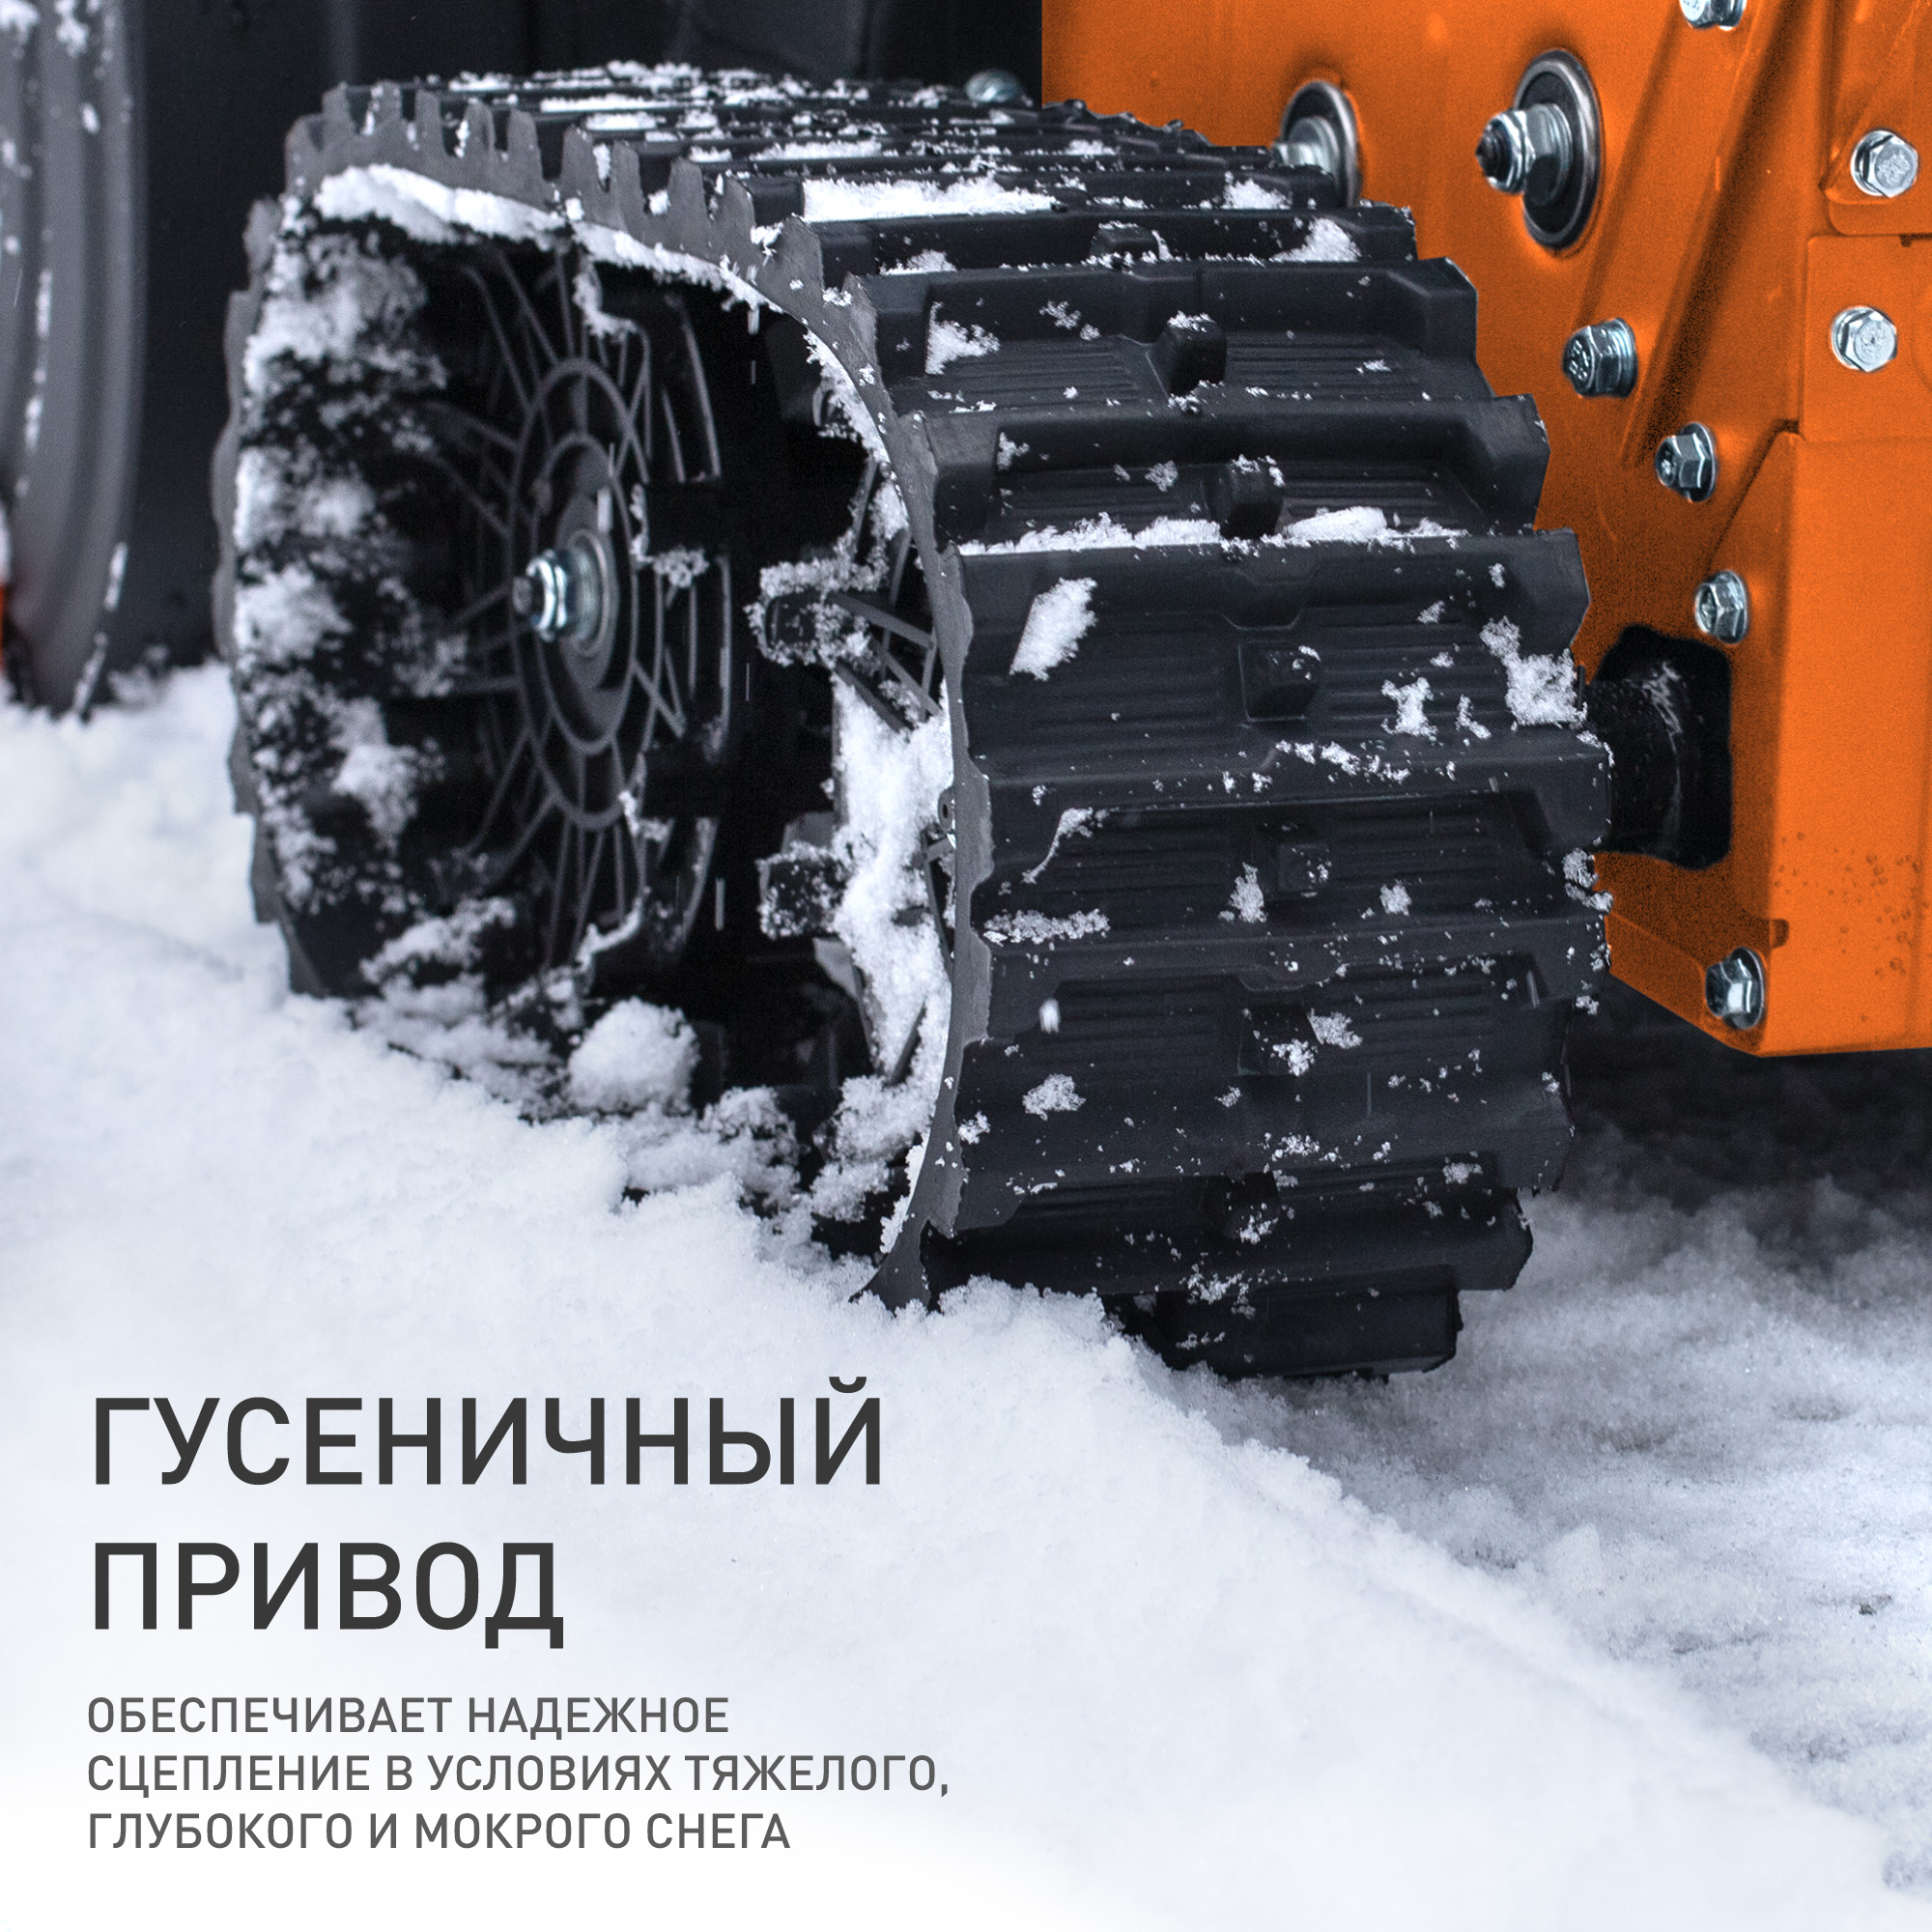 Снегоуборщик бензиновый PATRIOT Сибирь 130 ЕТ